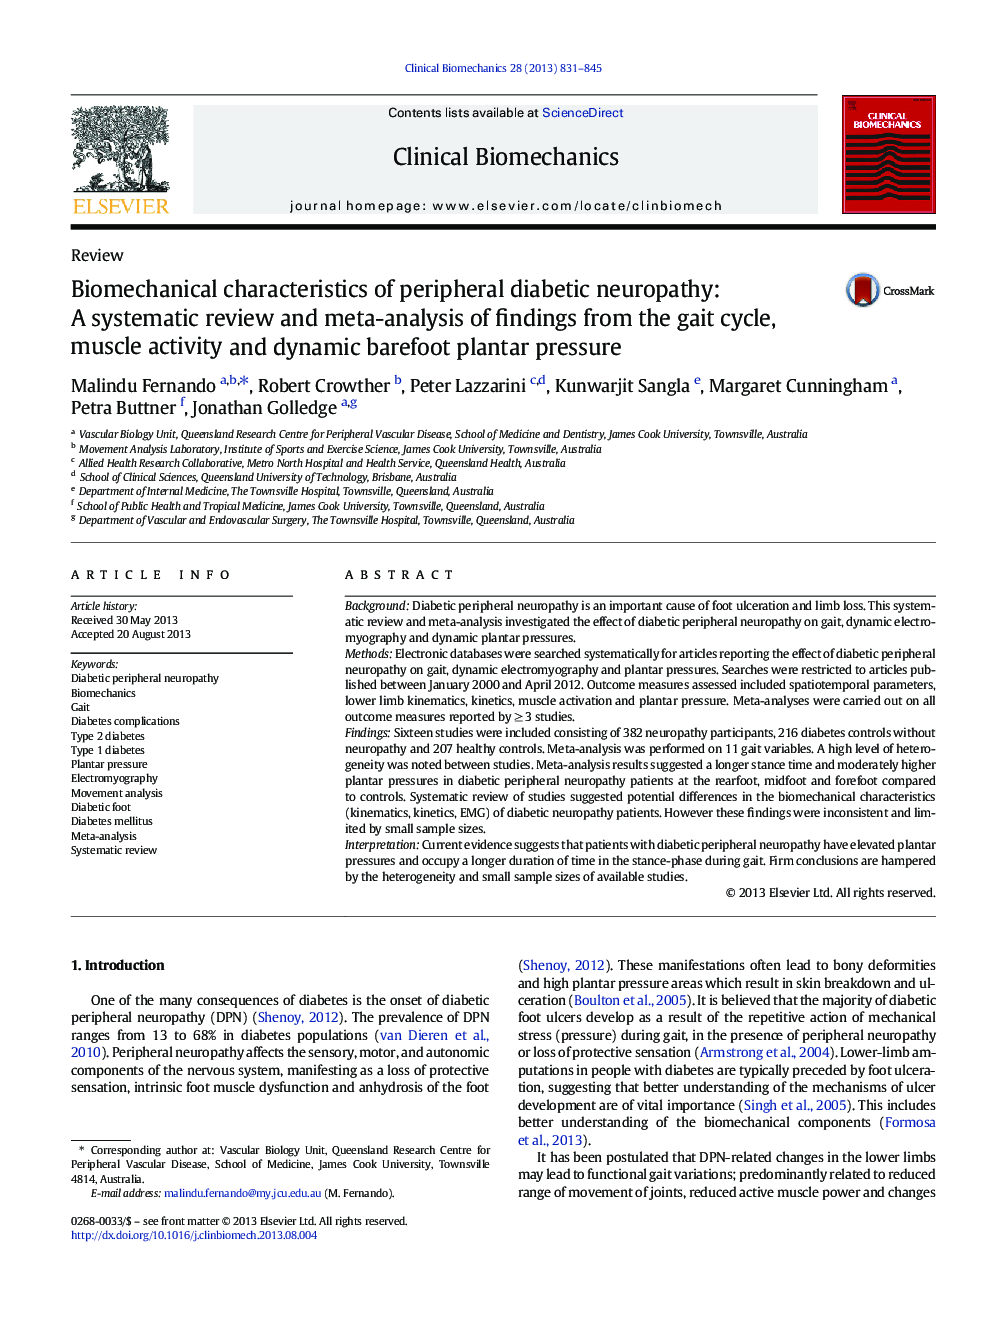 ویژگی های بیومکانیک نوروپاتی دیابتی محیطی: یک بررسی سیستماتیک و متاآنالیز یافته ها از چرخه راه رفتن، فعالیت عضلانی و فشار پاستای پابرهنه 